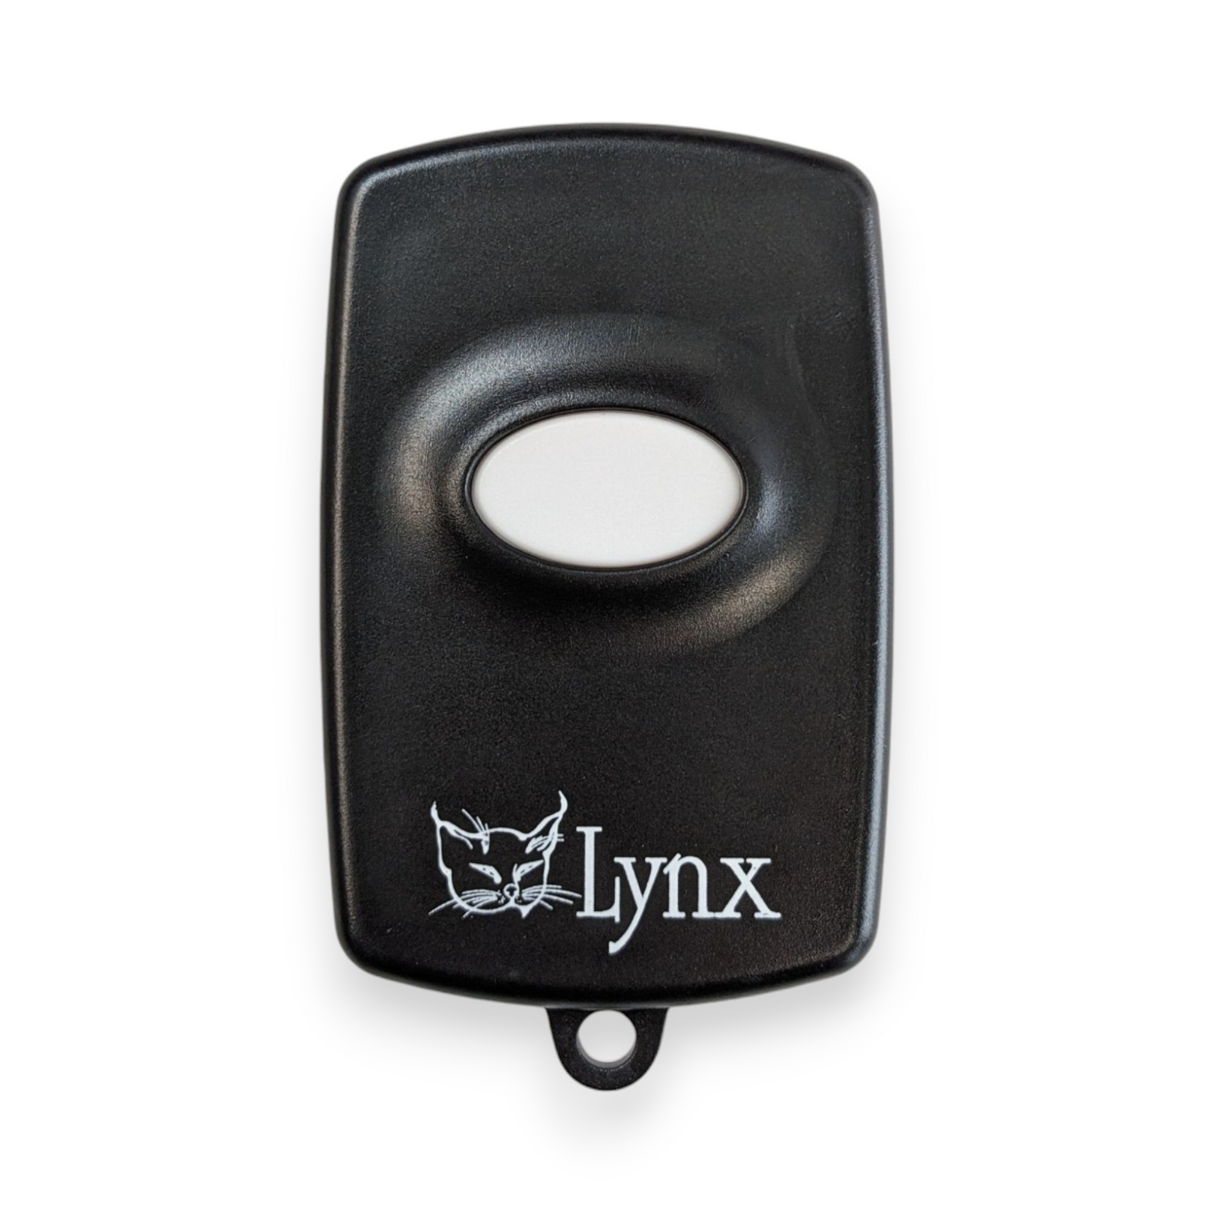 1 Button Remote | LX700